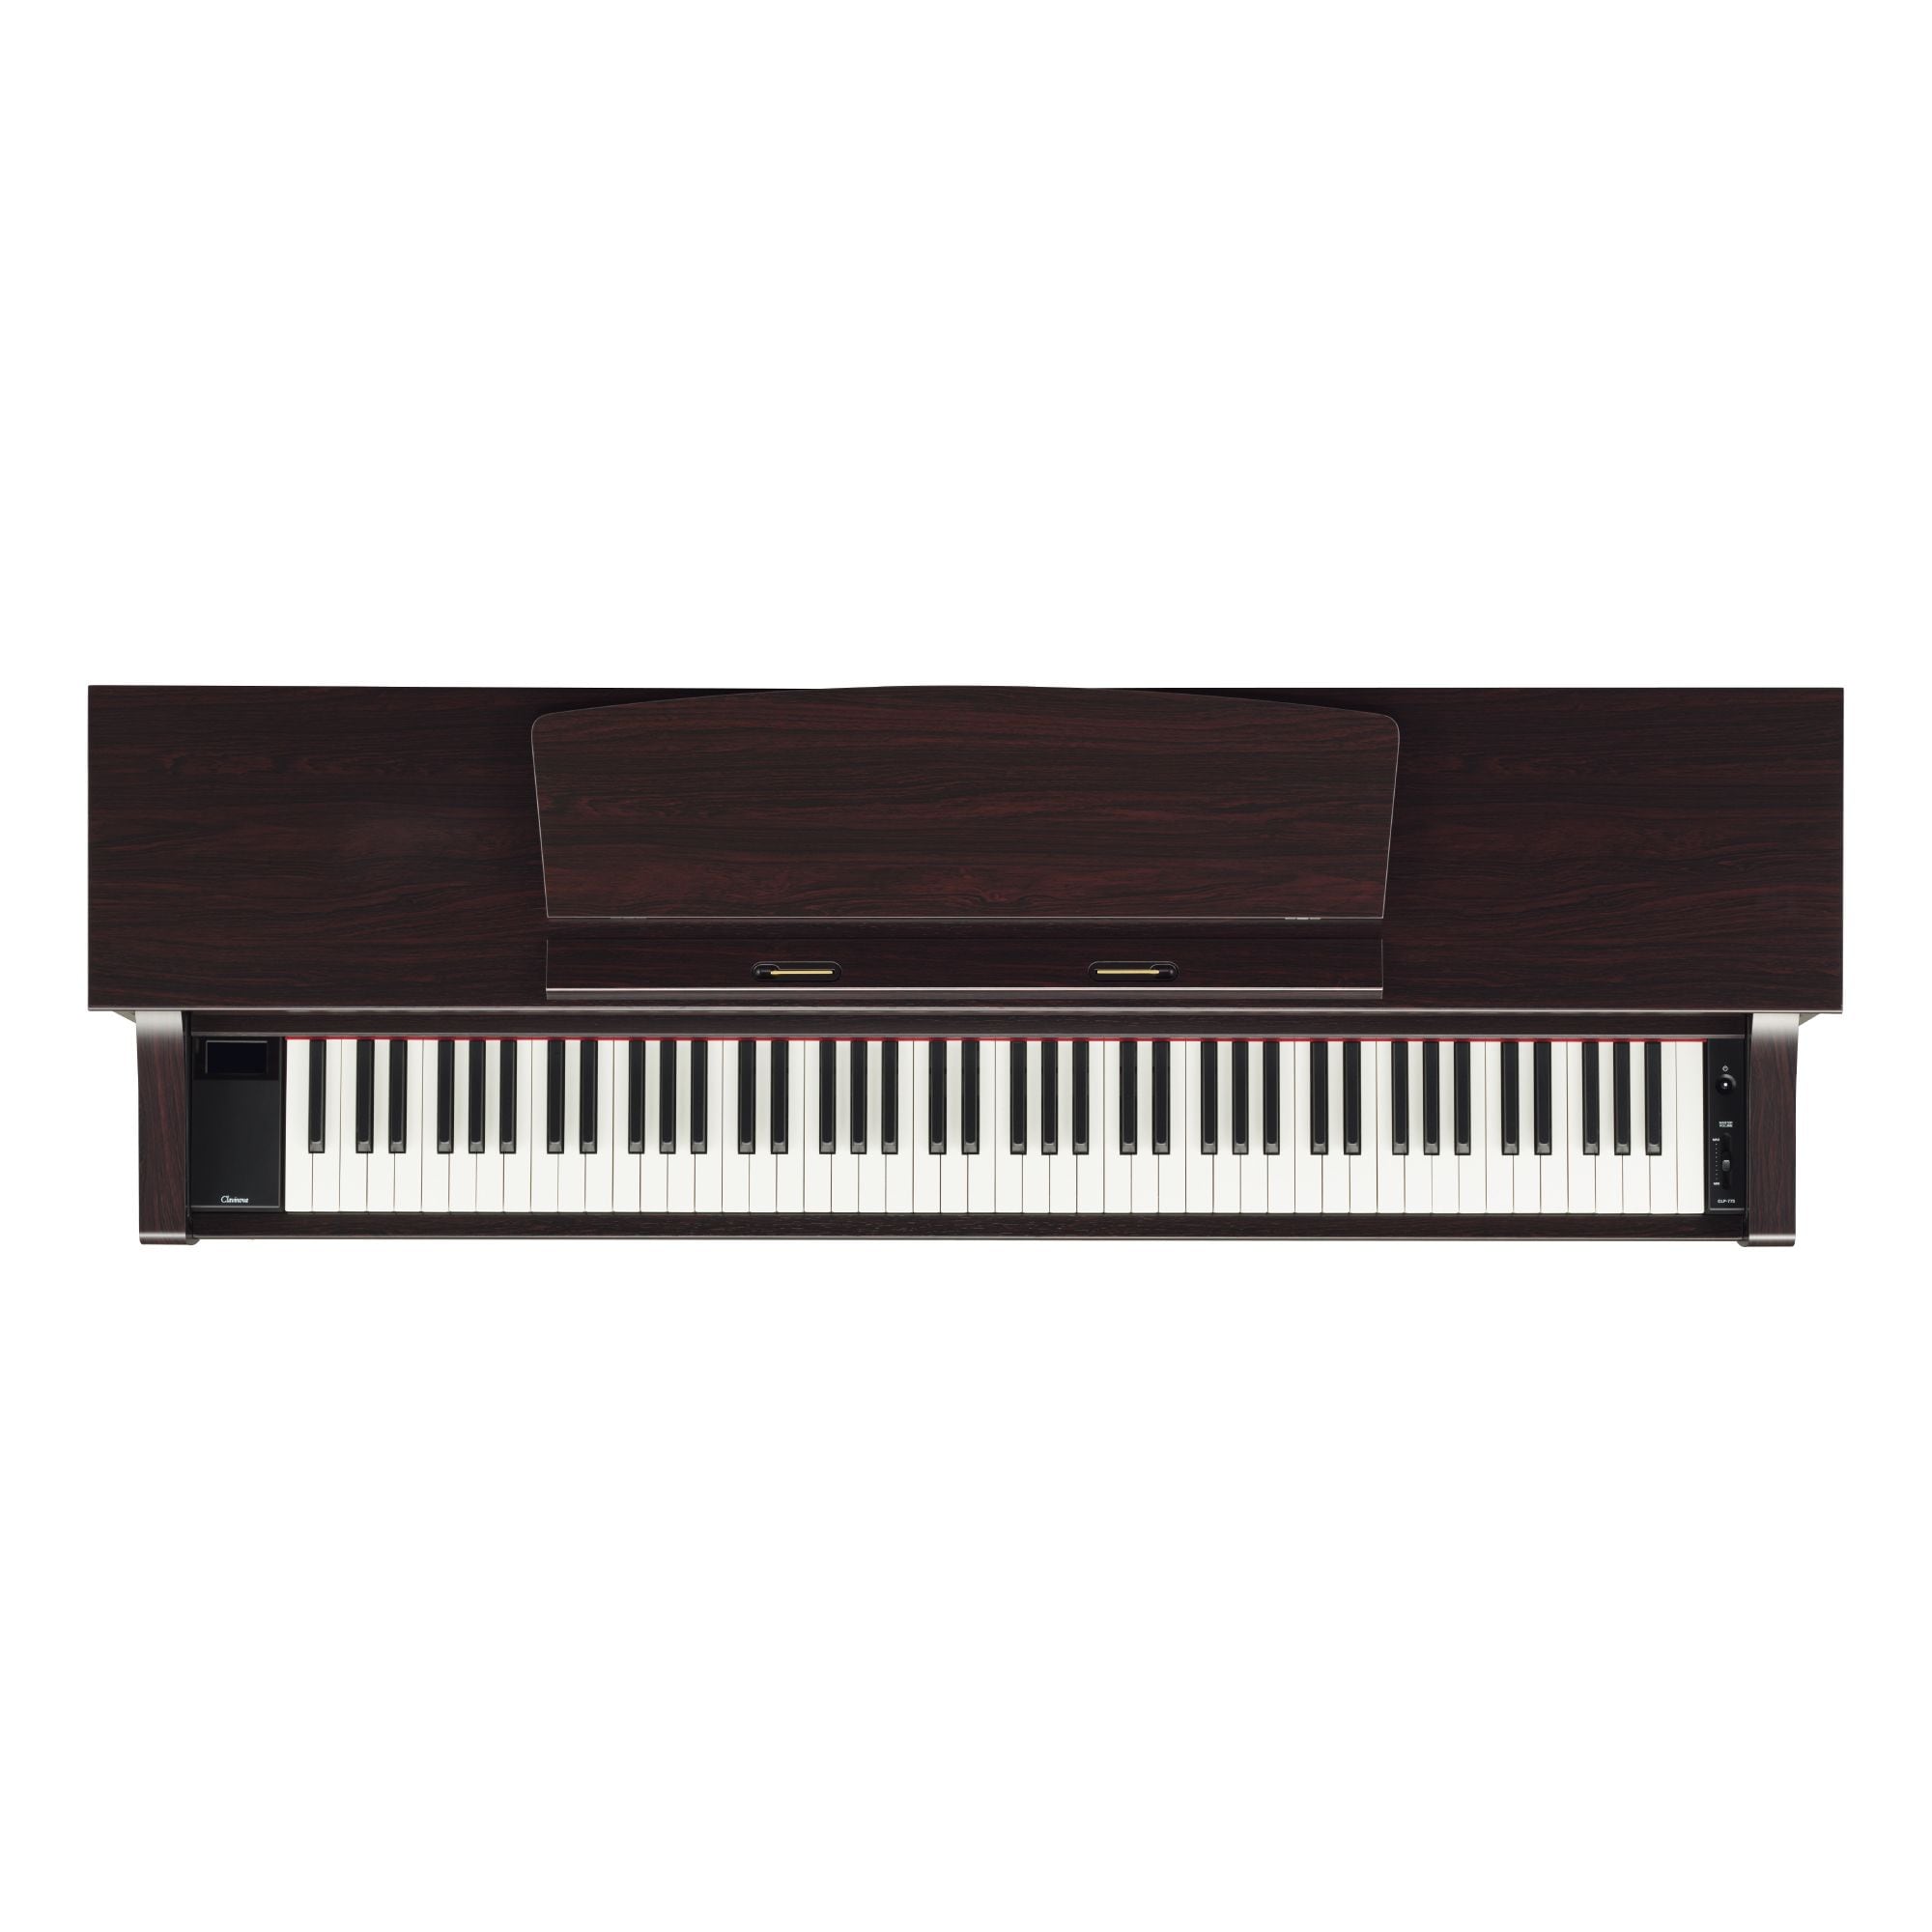 YAMAHA クラビノーバ CLP-775 電子ピアノ